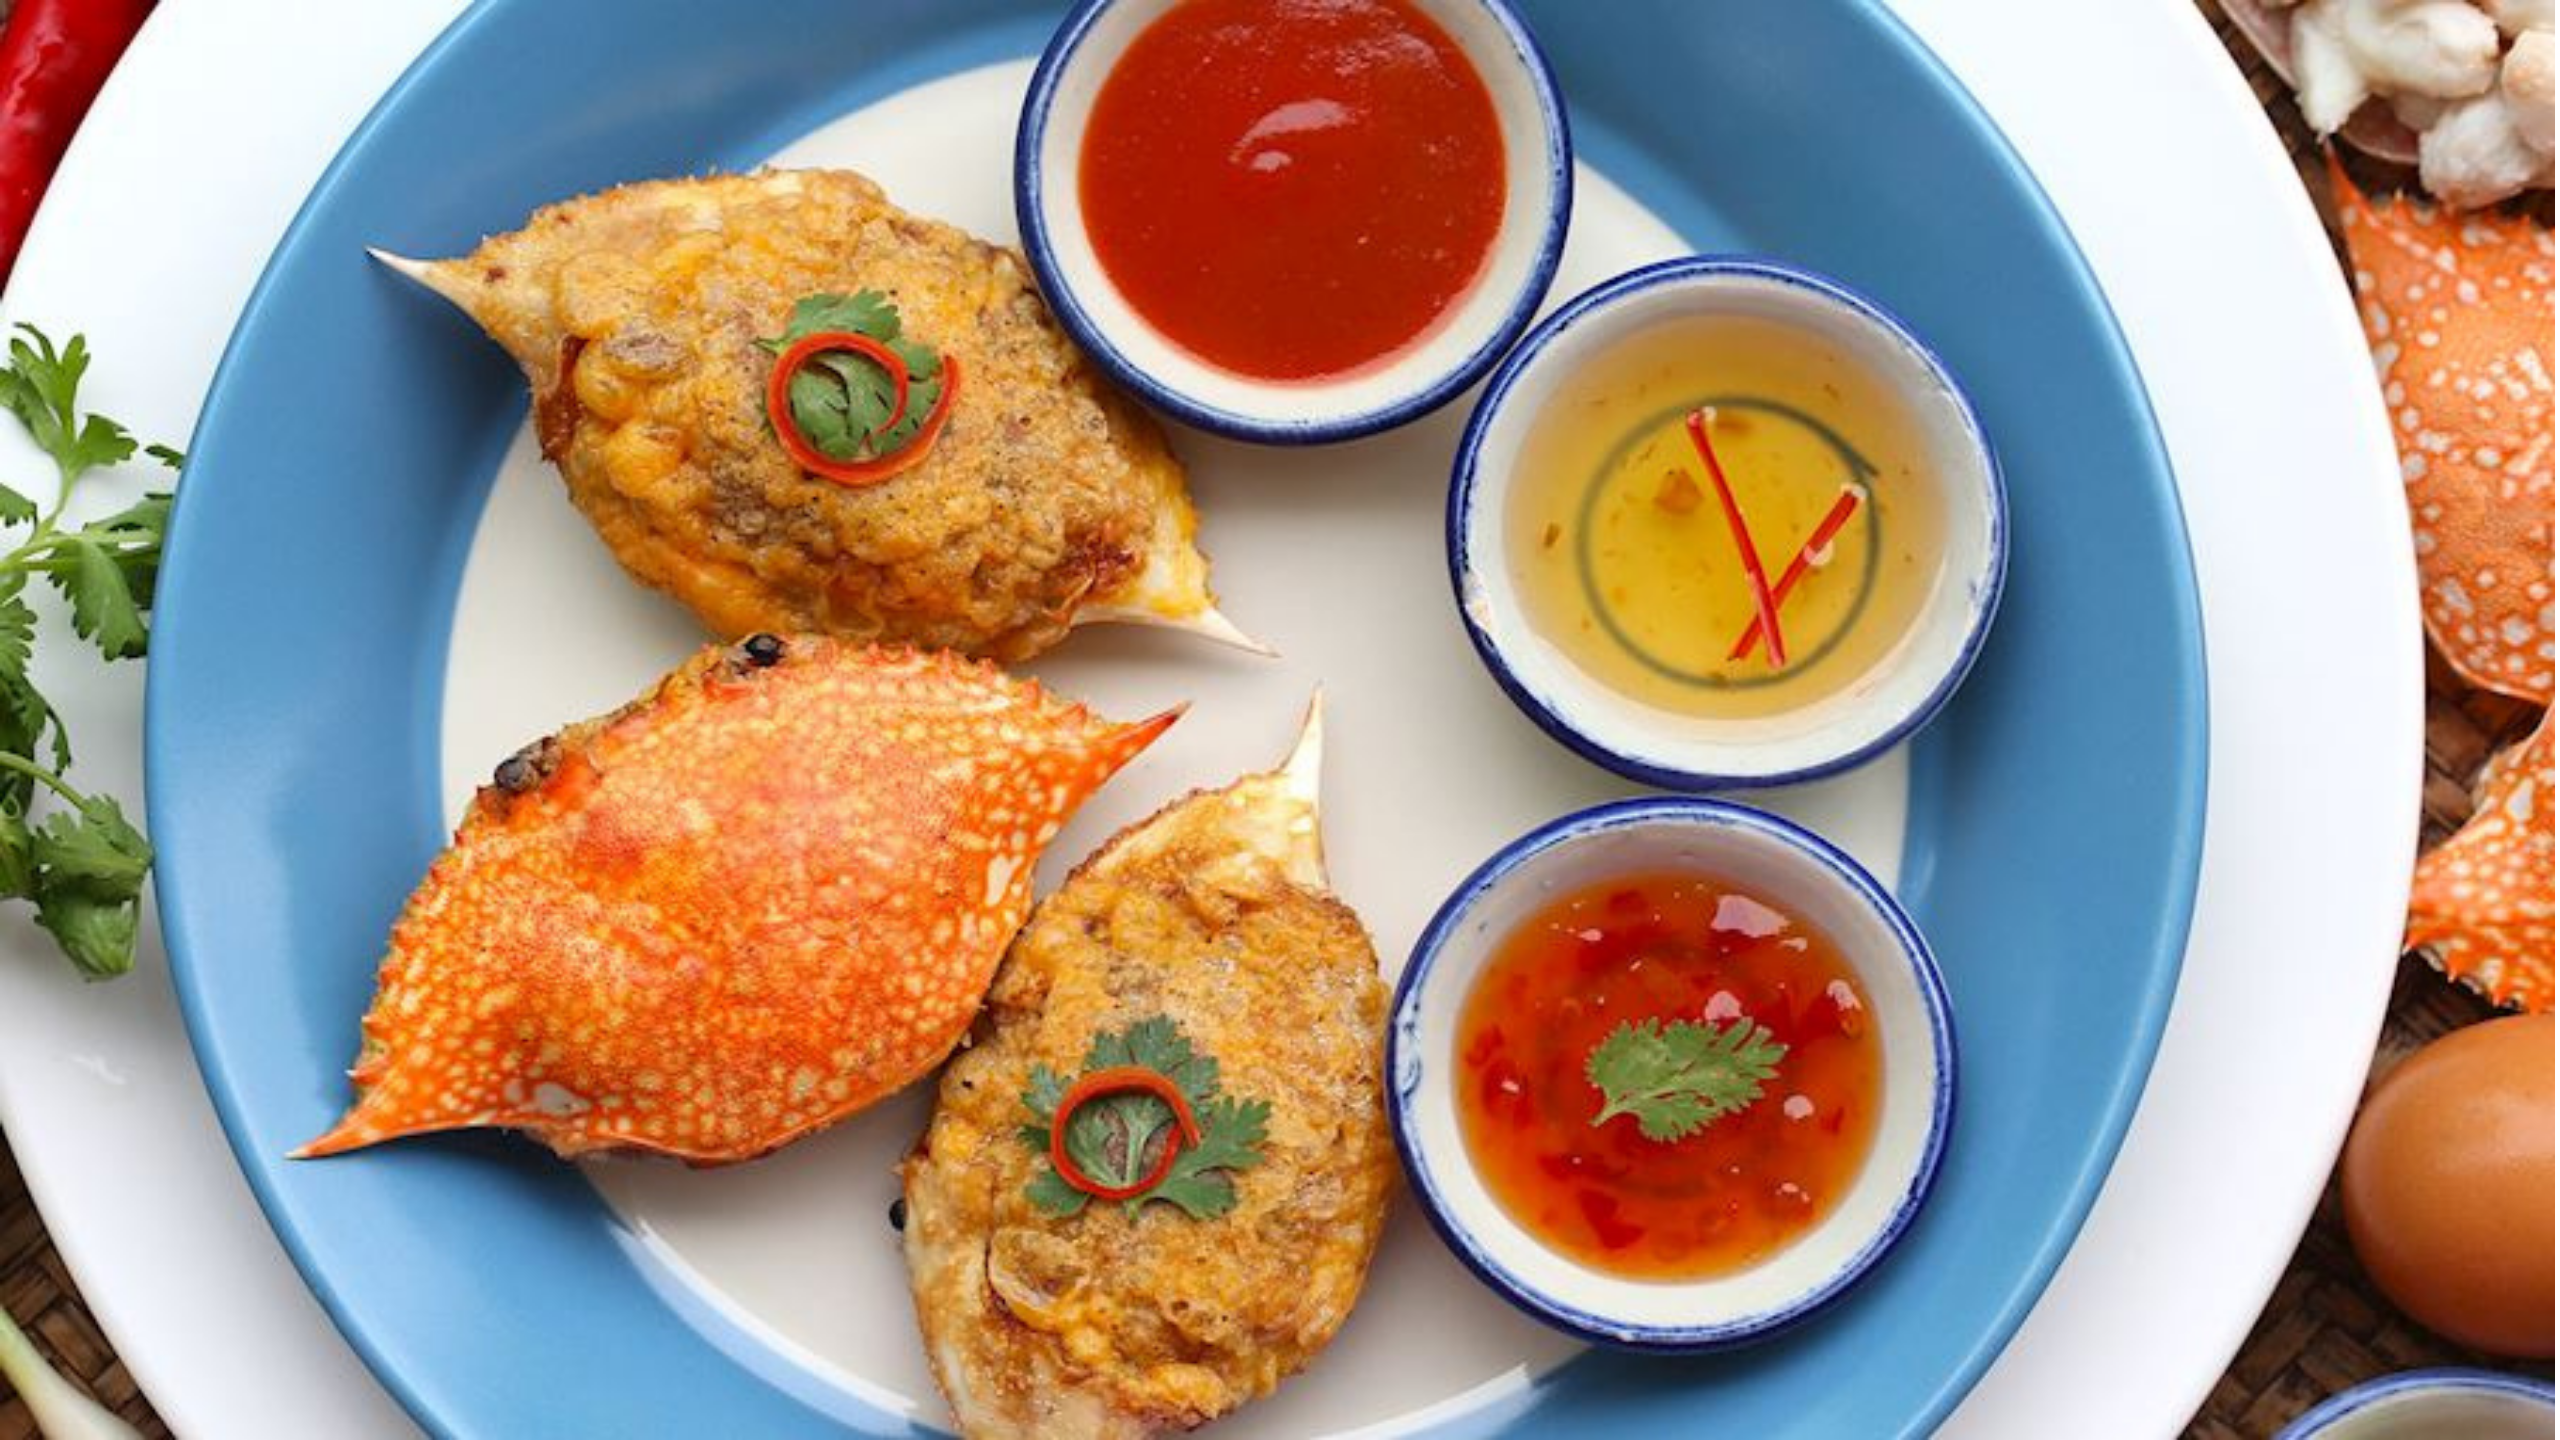 Thai Seafood